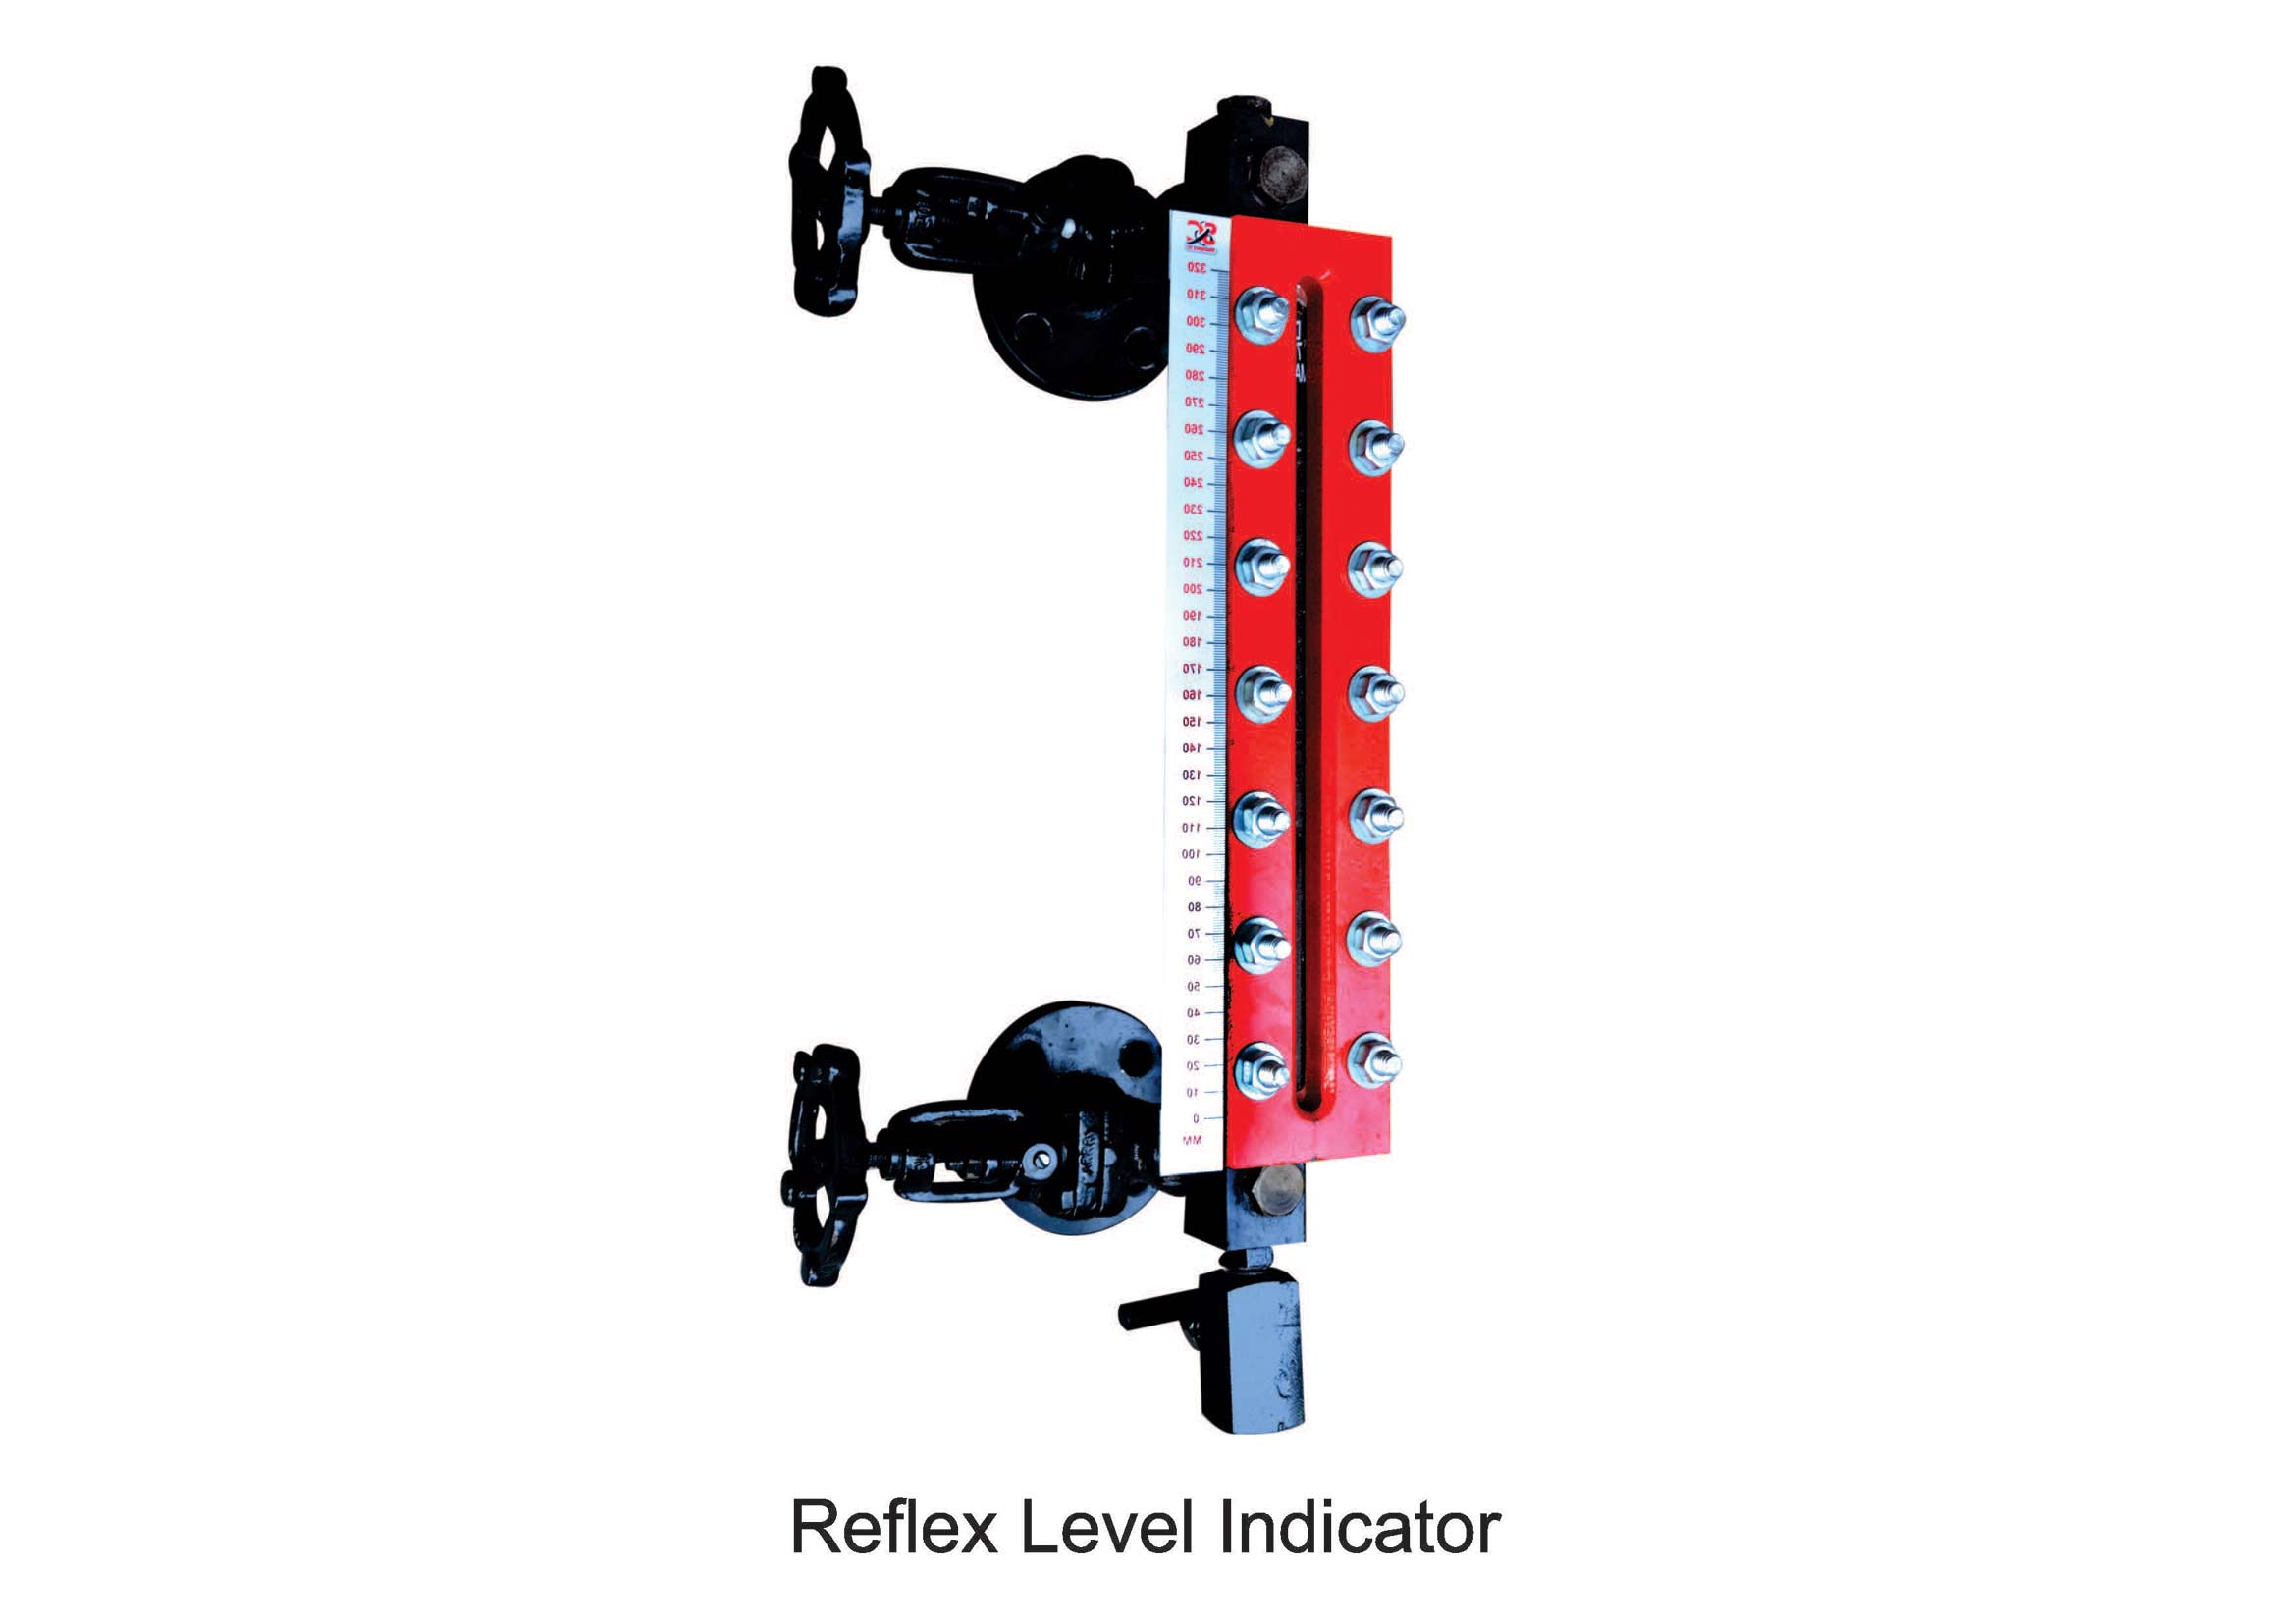 Reflex Level Gauge